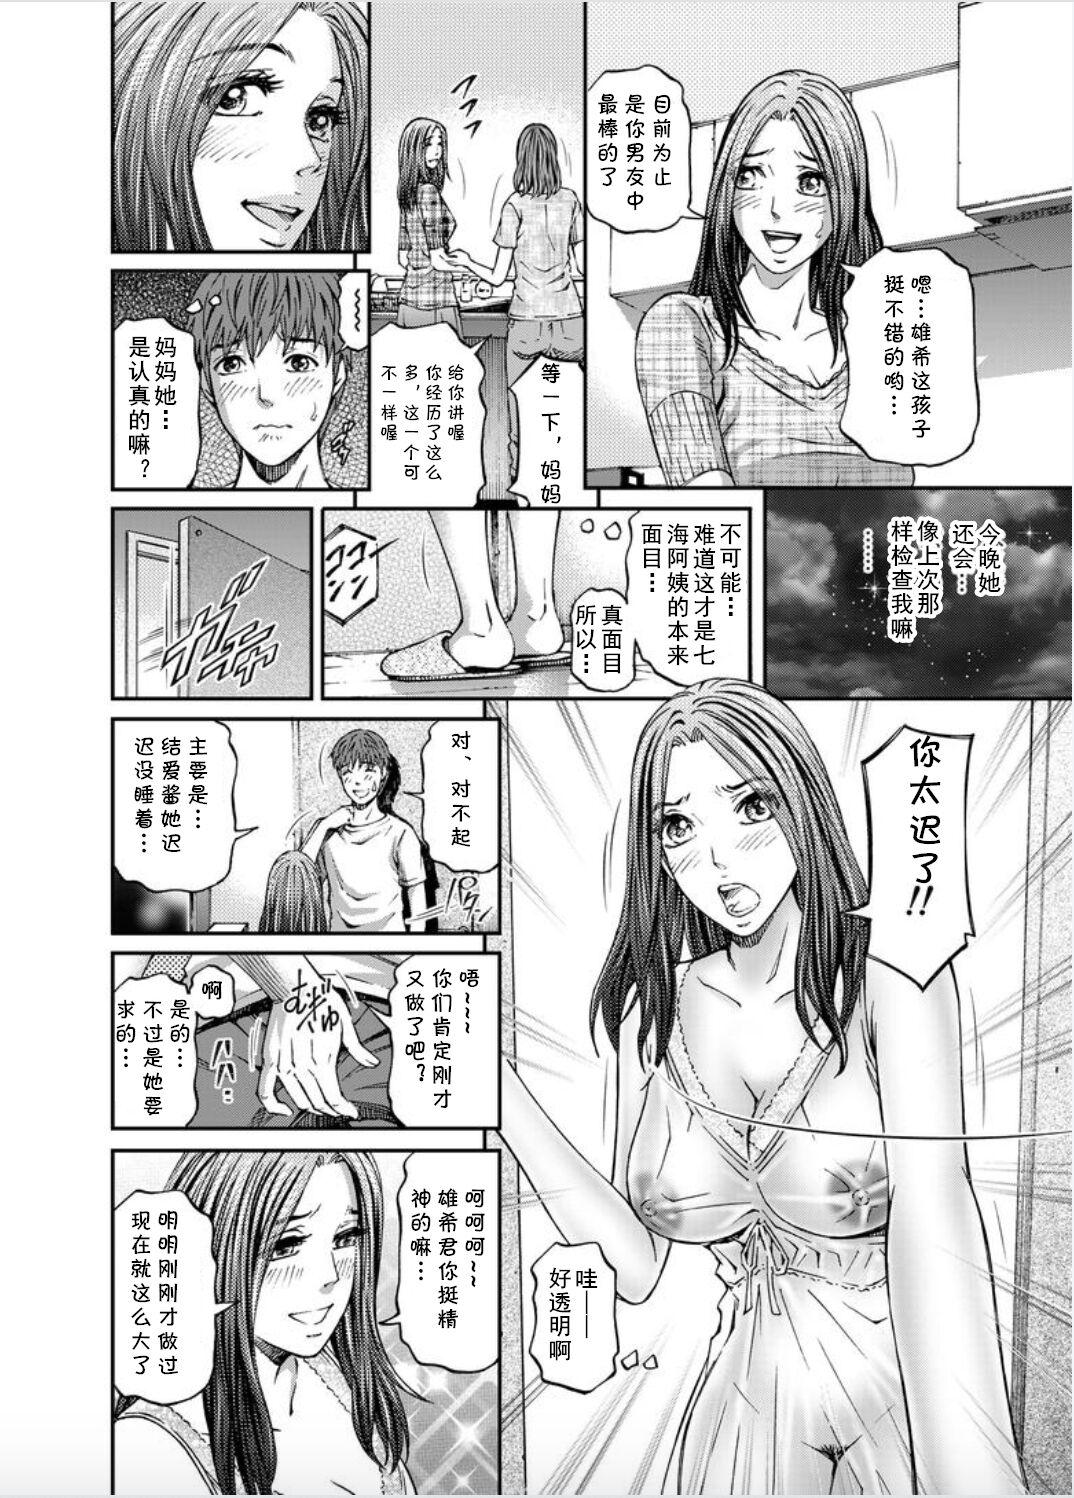 Mms Onna-tachi ga Iku Toki... Ero Drama Vol. 8 Datte, Kanojo no Haha ga... Hot Girl Porn - Page 8